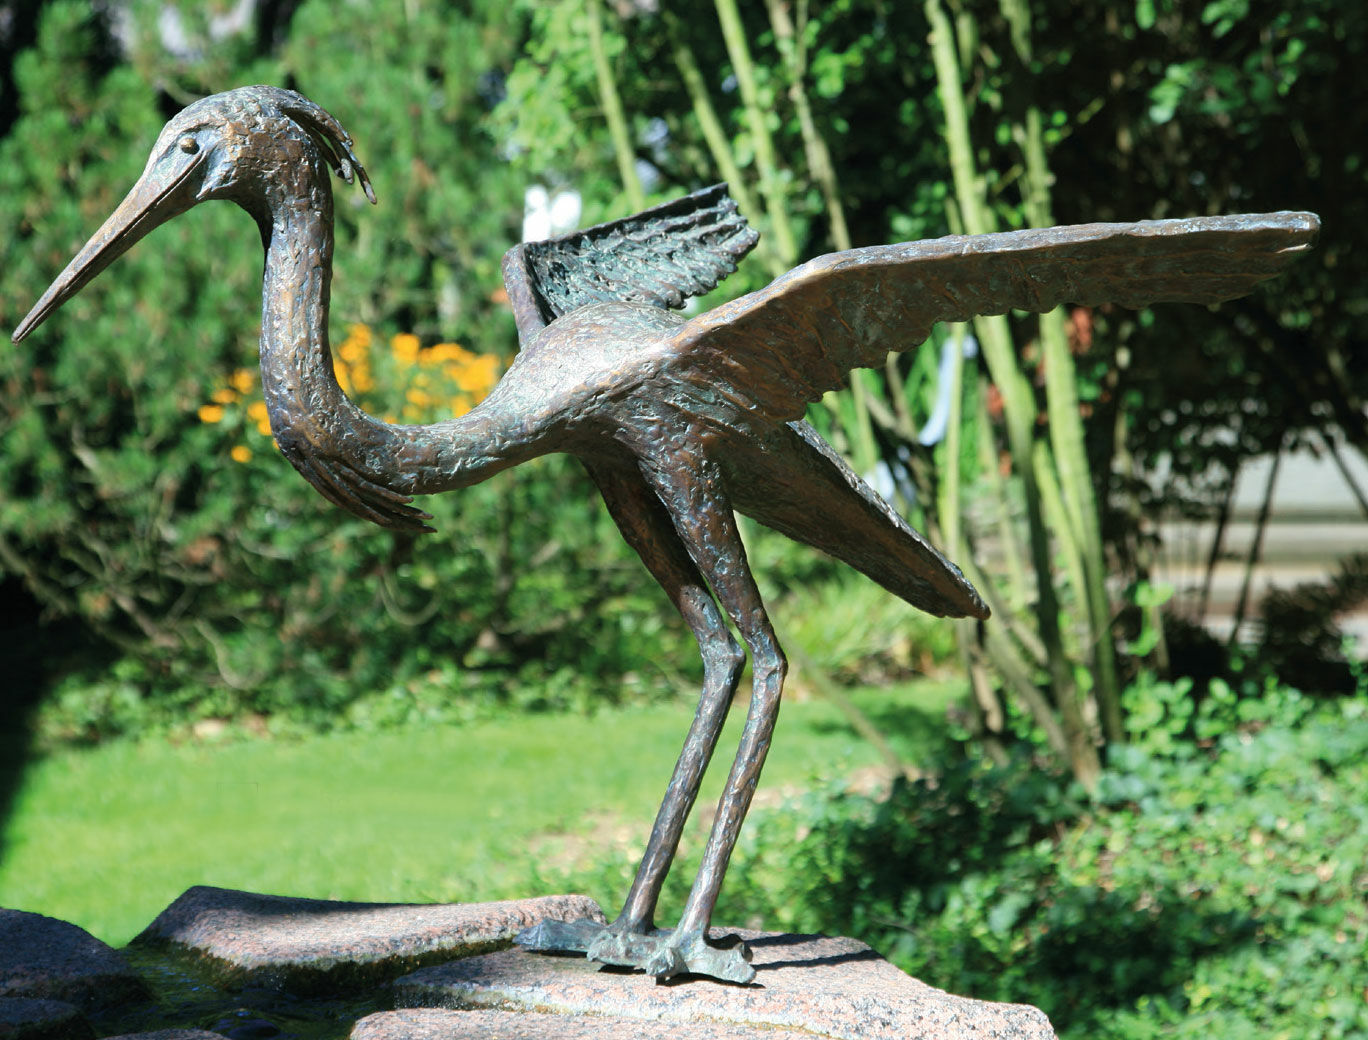 Garden sculpture "Heron", bronze by Ernst Günzkofer